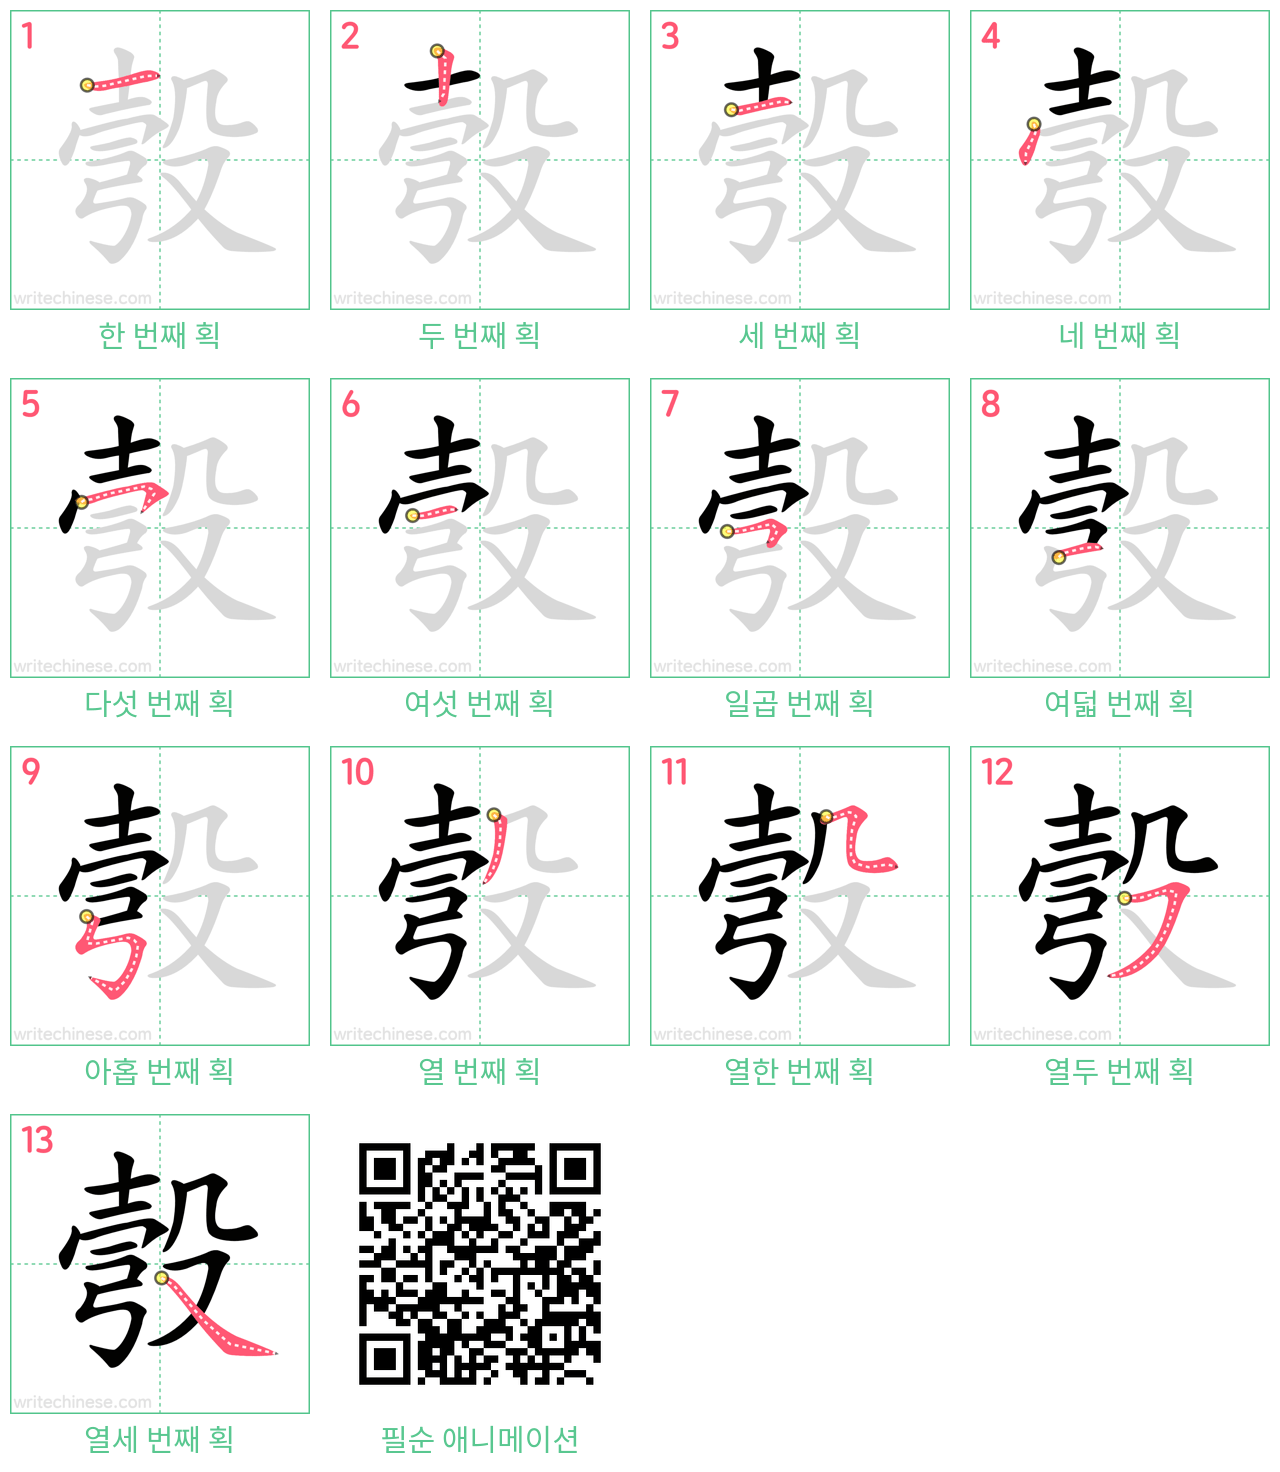 彀 step-by-step stroke order diagrams